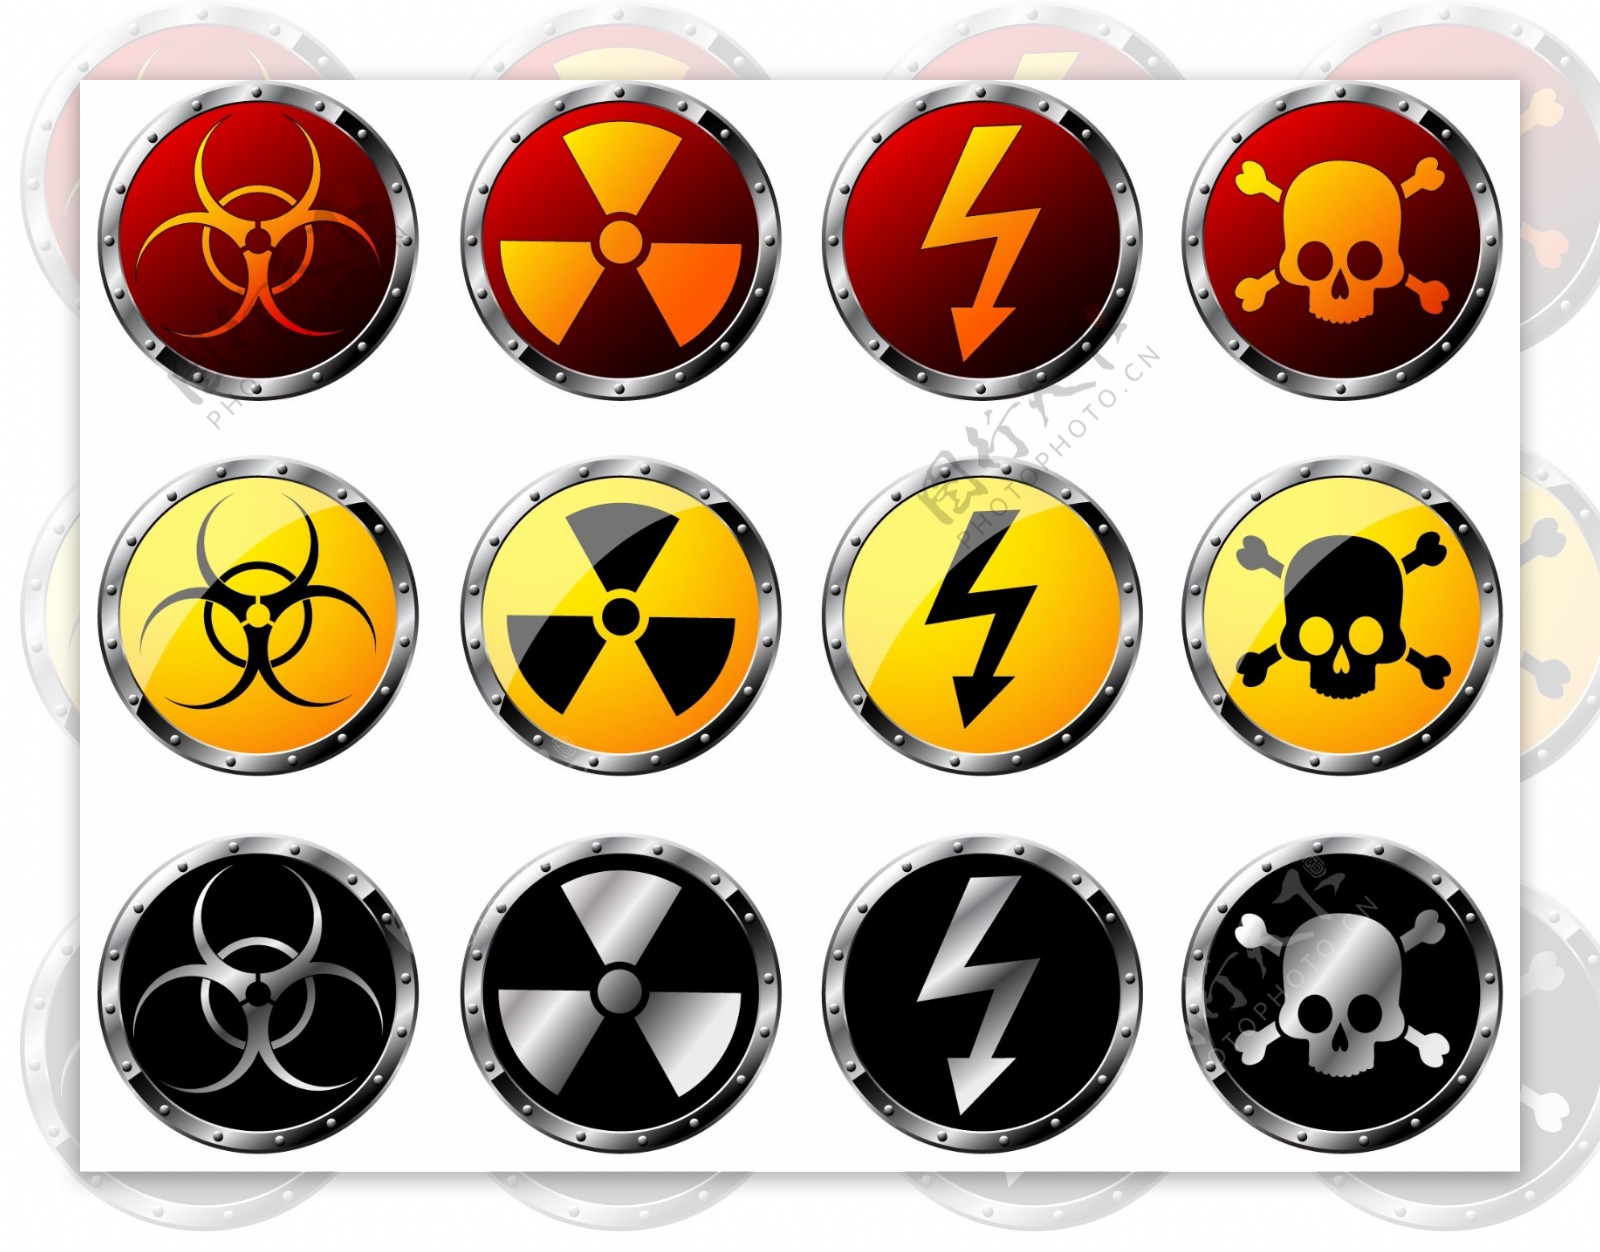 核辐射警告标志矢量图标